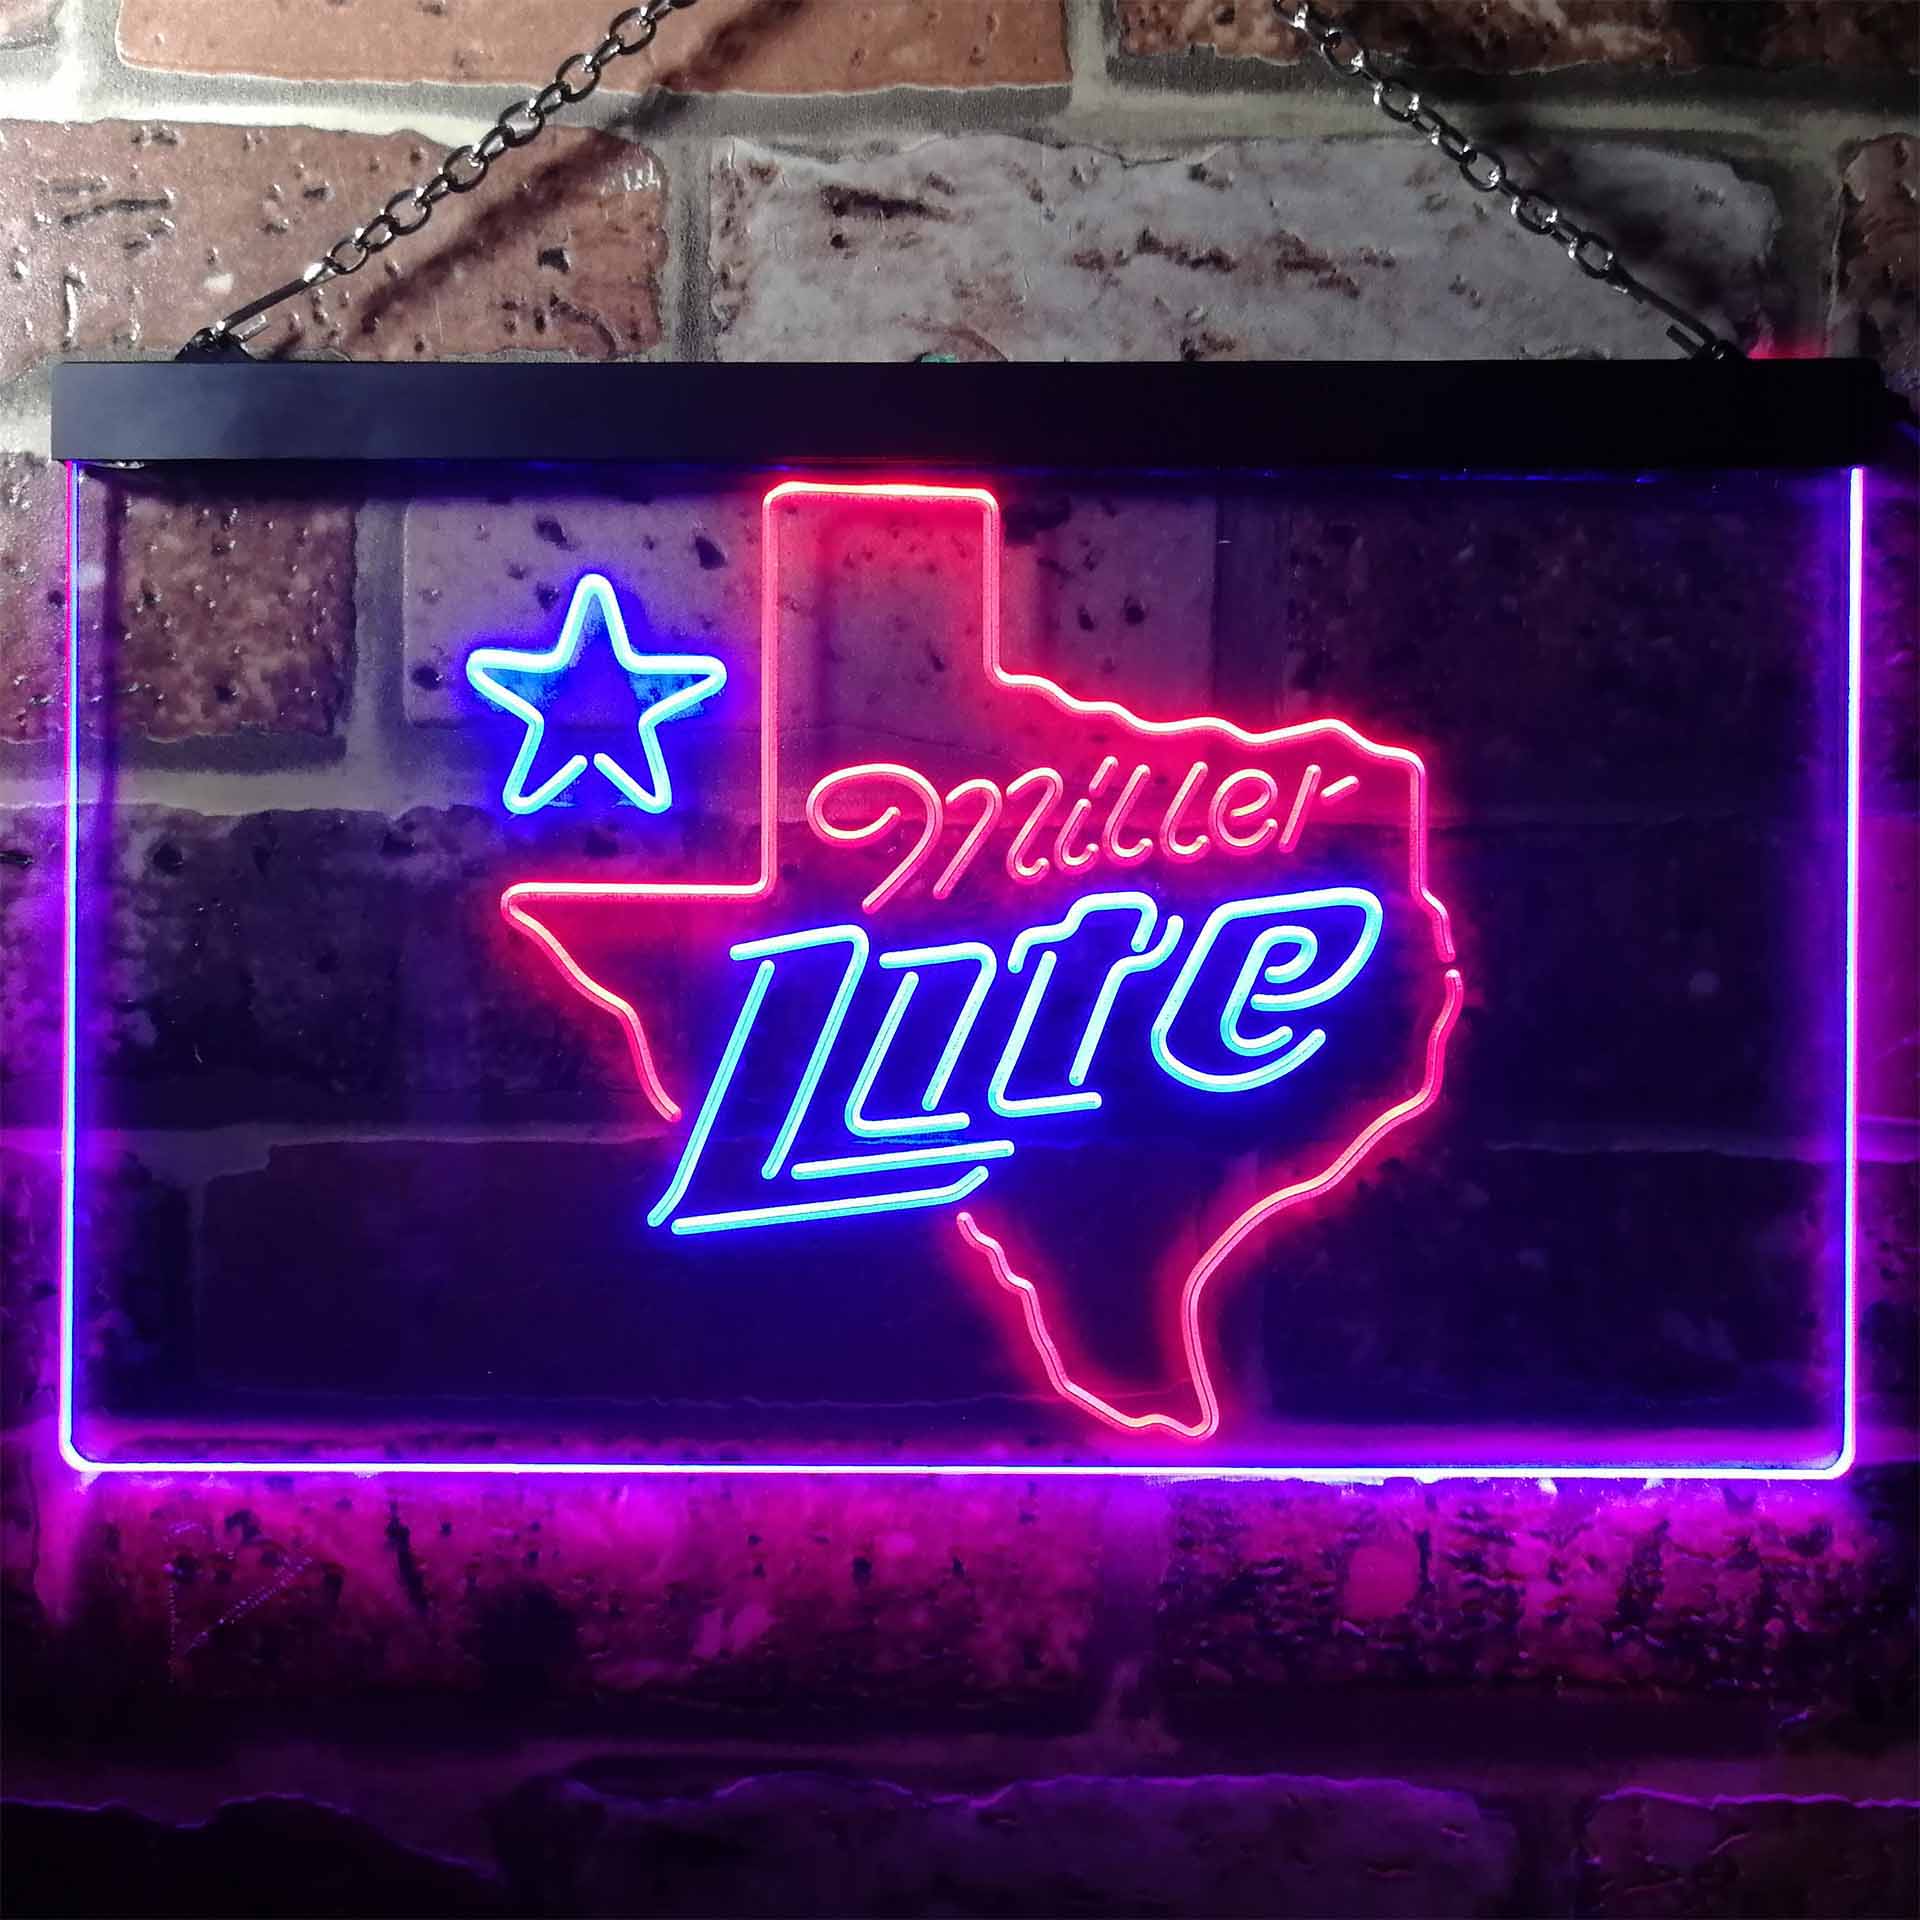 Miller Texas Star Beer Neon-Like LED Sign